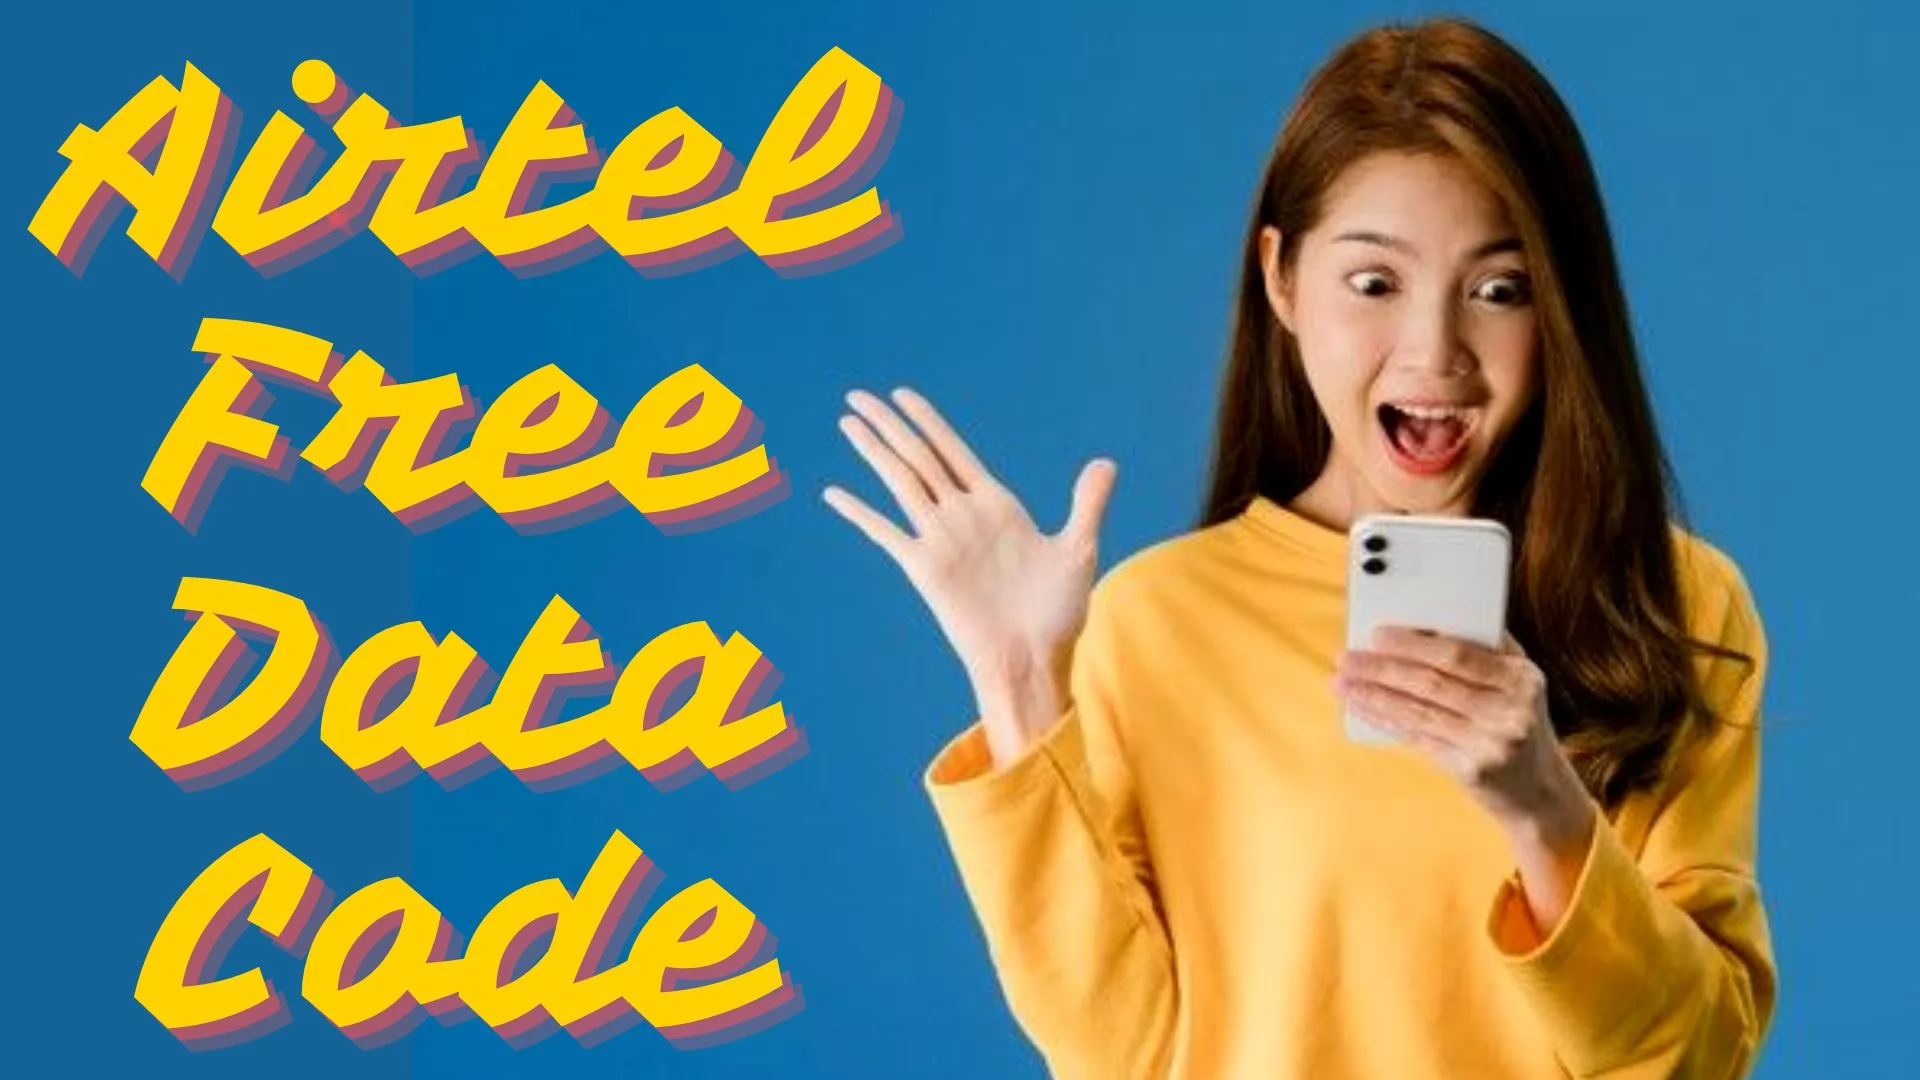 Airtel Free Data Code